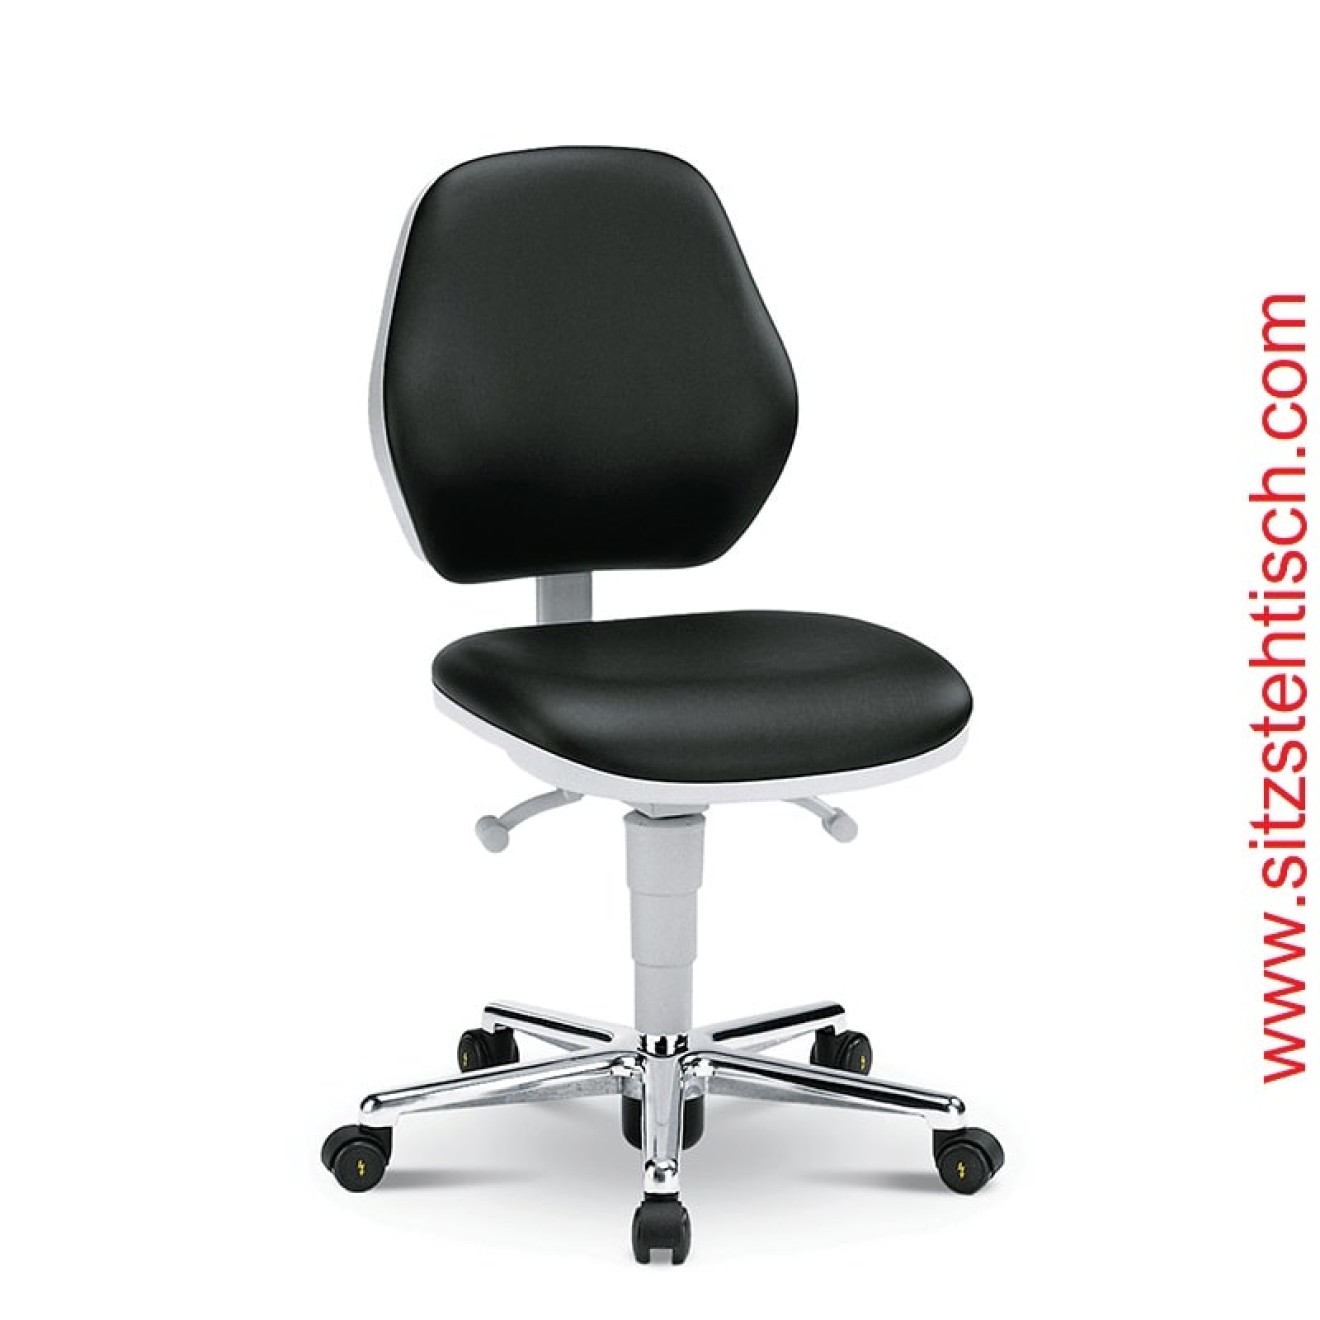 ESD-Reinraumdrehstuhl - Sitz und Rückenlehne sind mit Kunstleder schwarz bezogen, Desinfektionsmittelbeständig, Fußkreuz aus Aluminium, elektrisch leitfähige Rollen Ø 50 mm - 5 Jahre Garantie